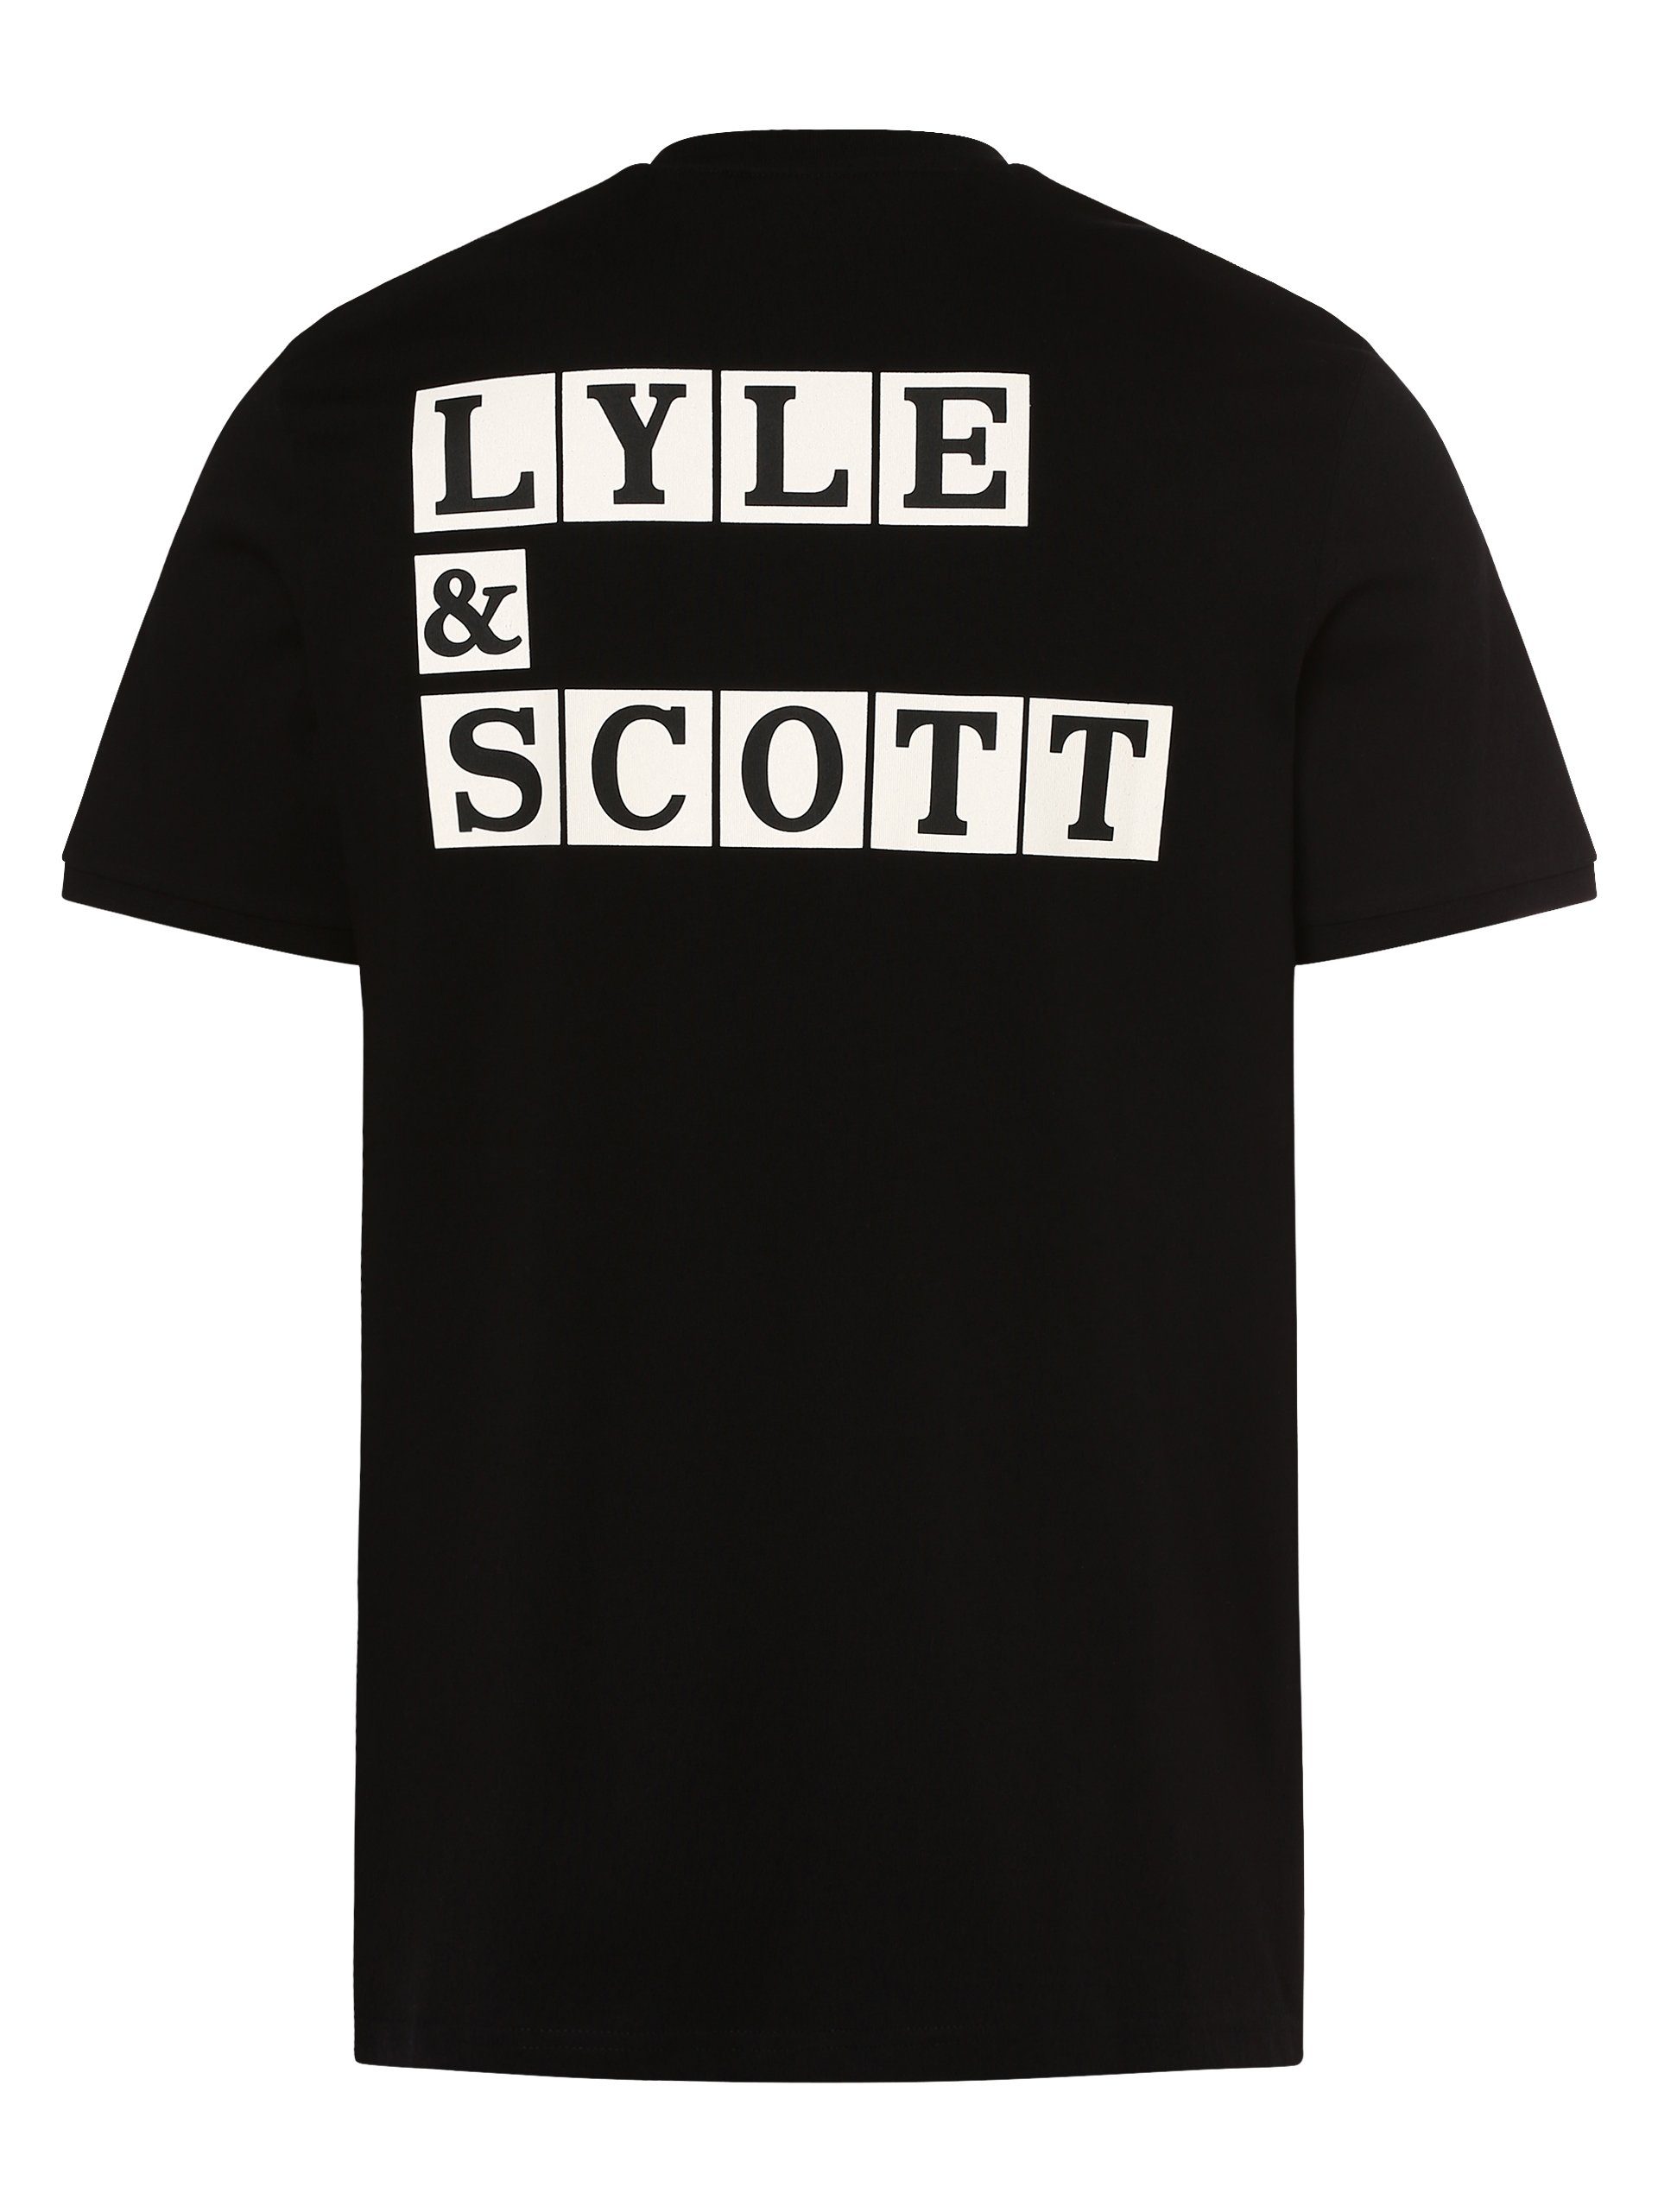 Lyle Scott schwarz & T-Shirt